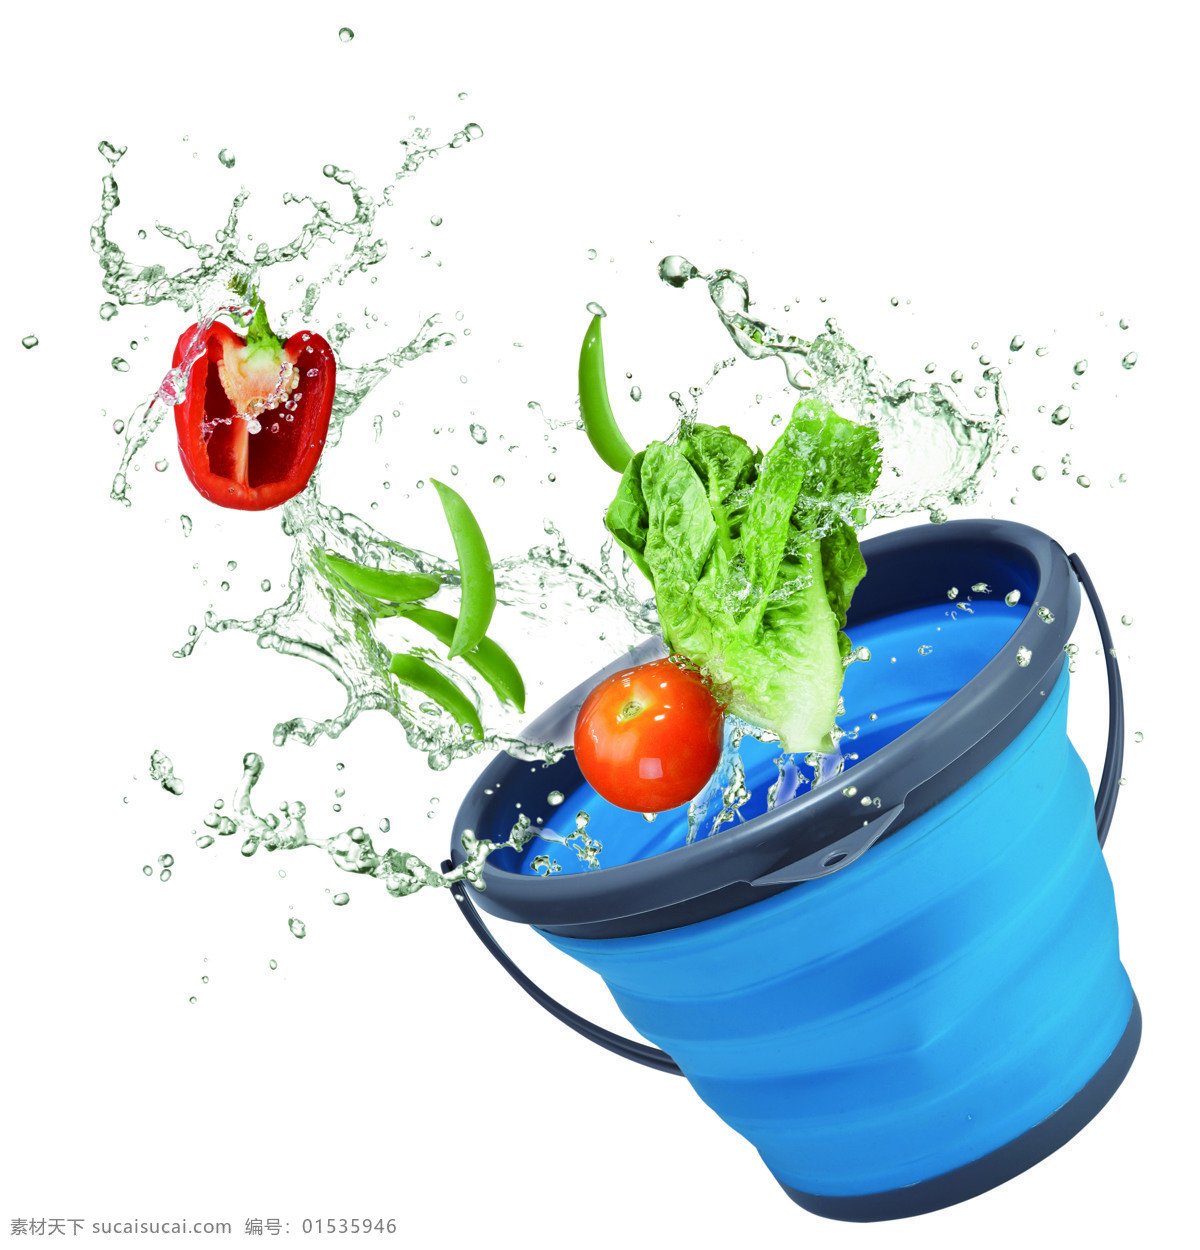 厨房 折叠桶 水桶 洗 果蔬 动感 家居用品 生活百科 生活素材